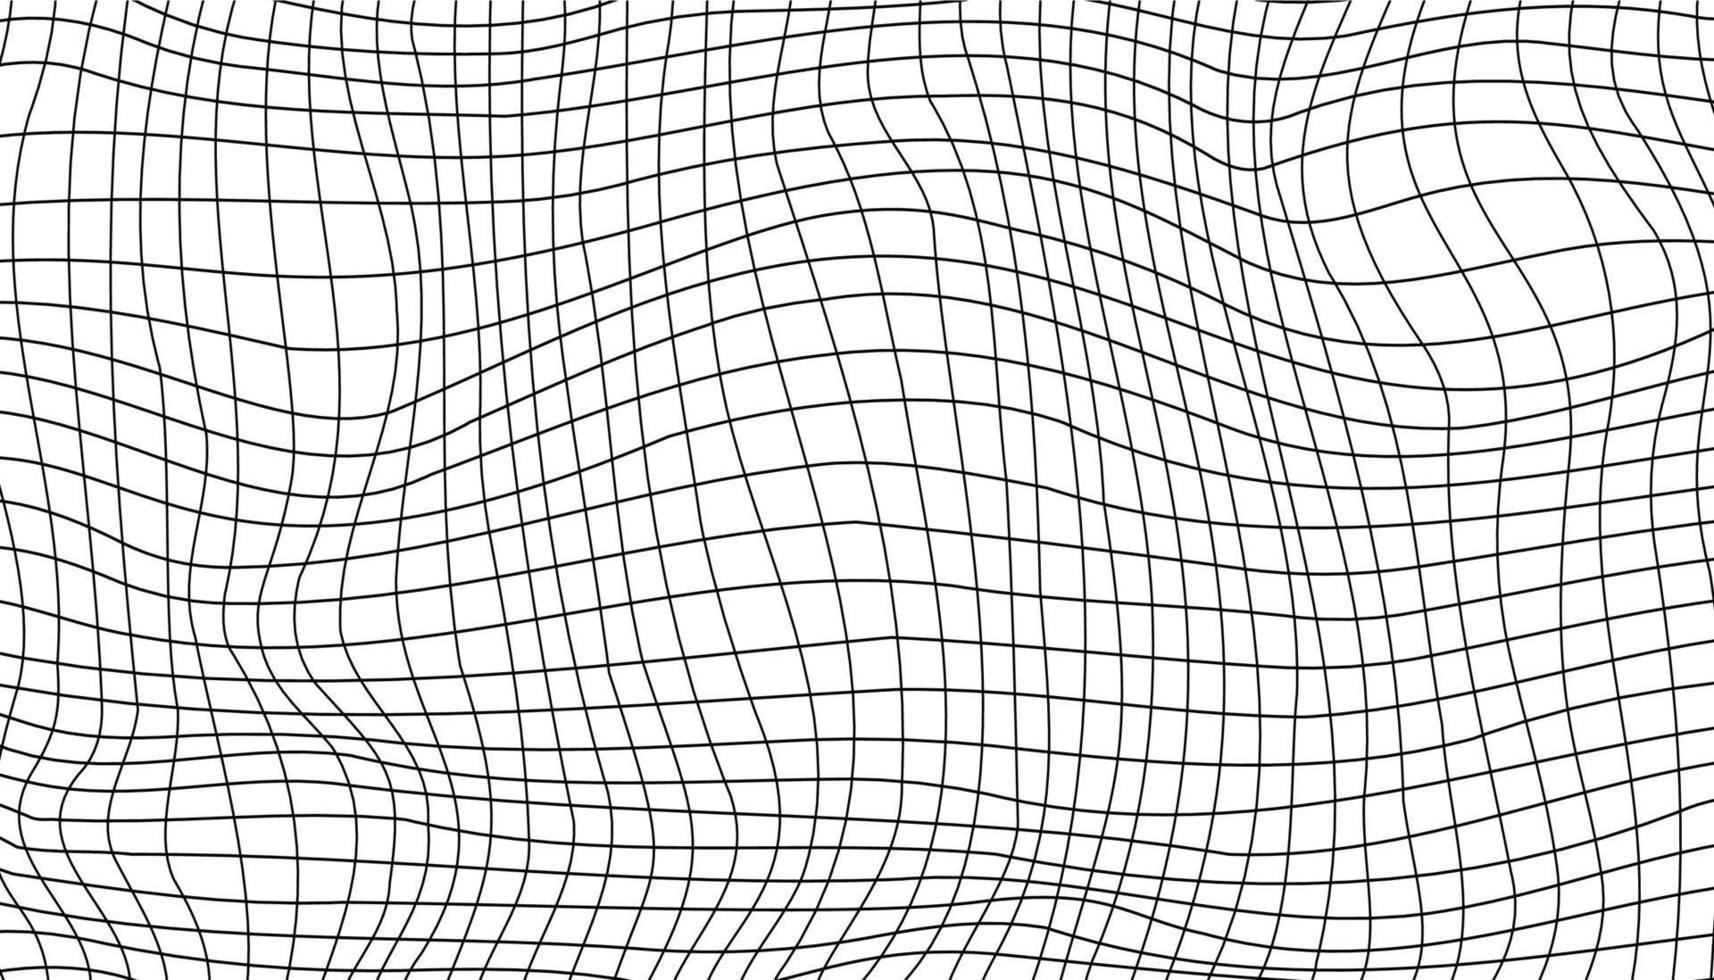 plano de fundo texturizado. fundo geométrico com quadrados com efeito de distorção de onda. vetor